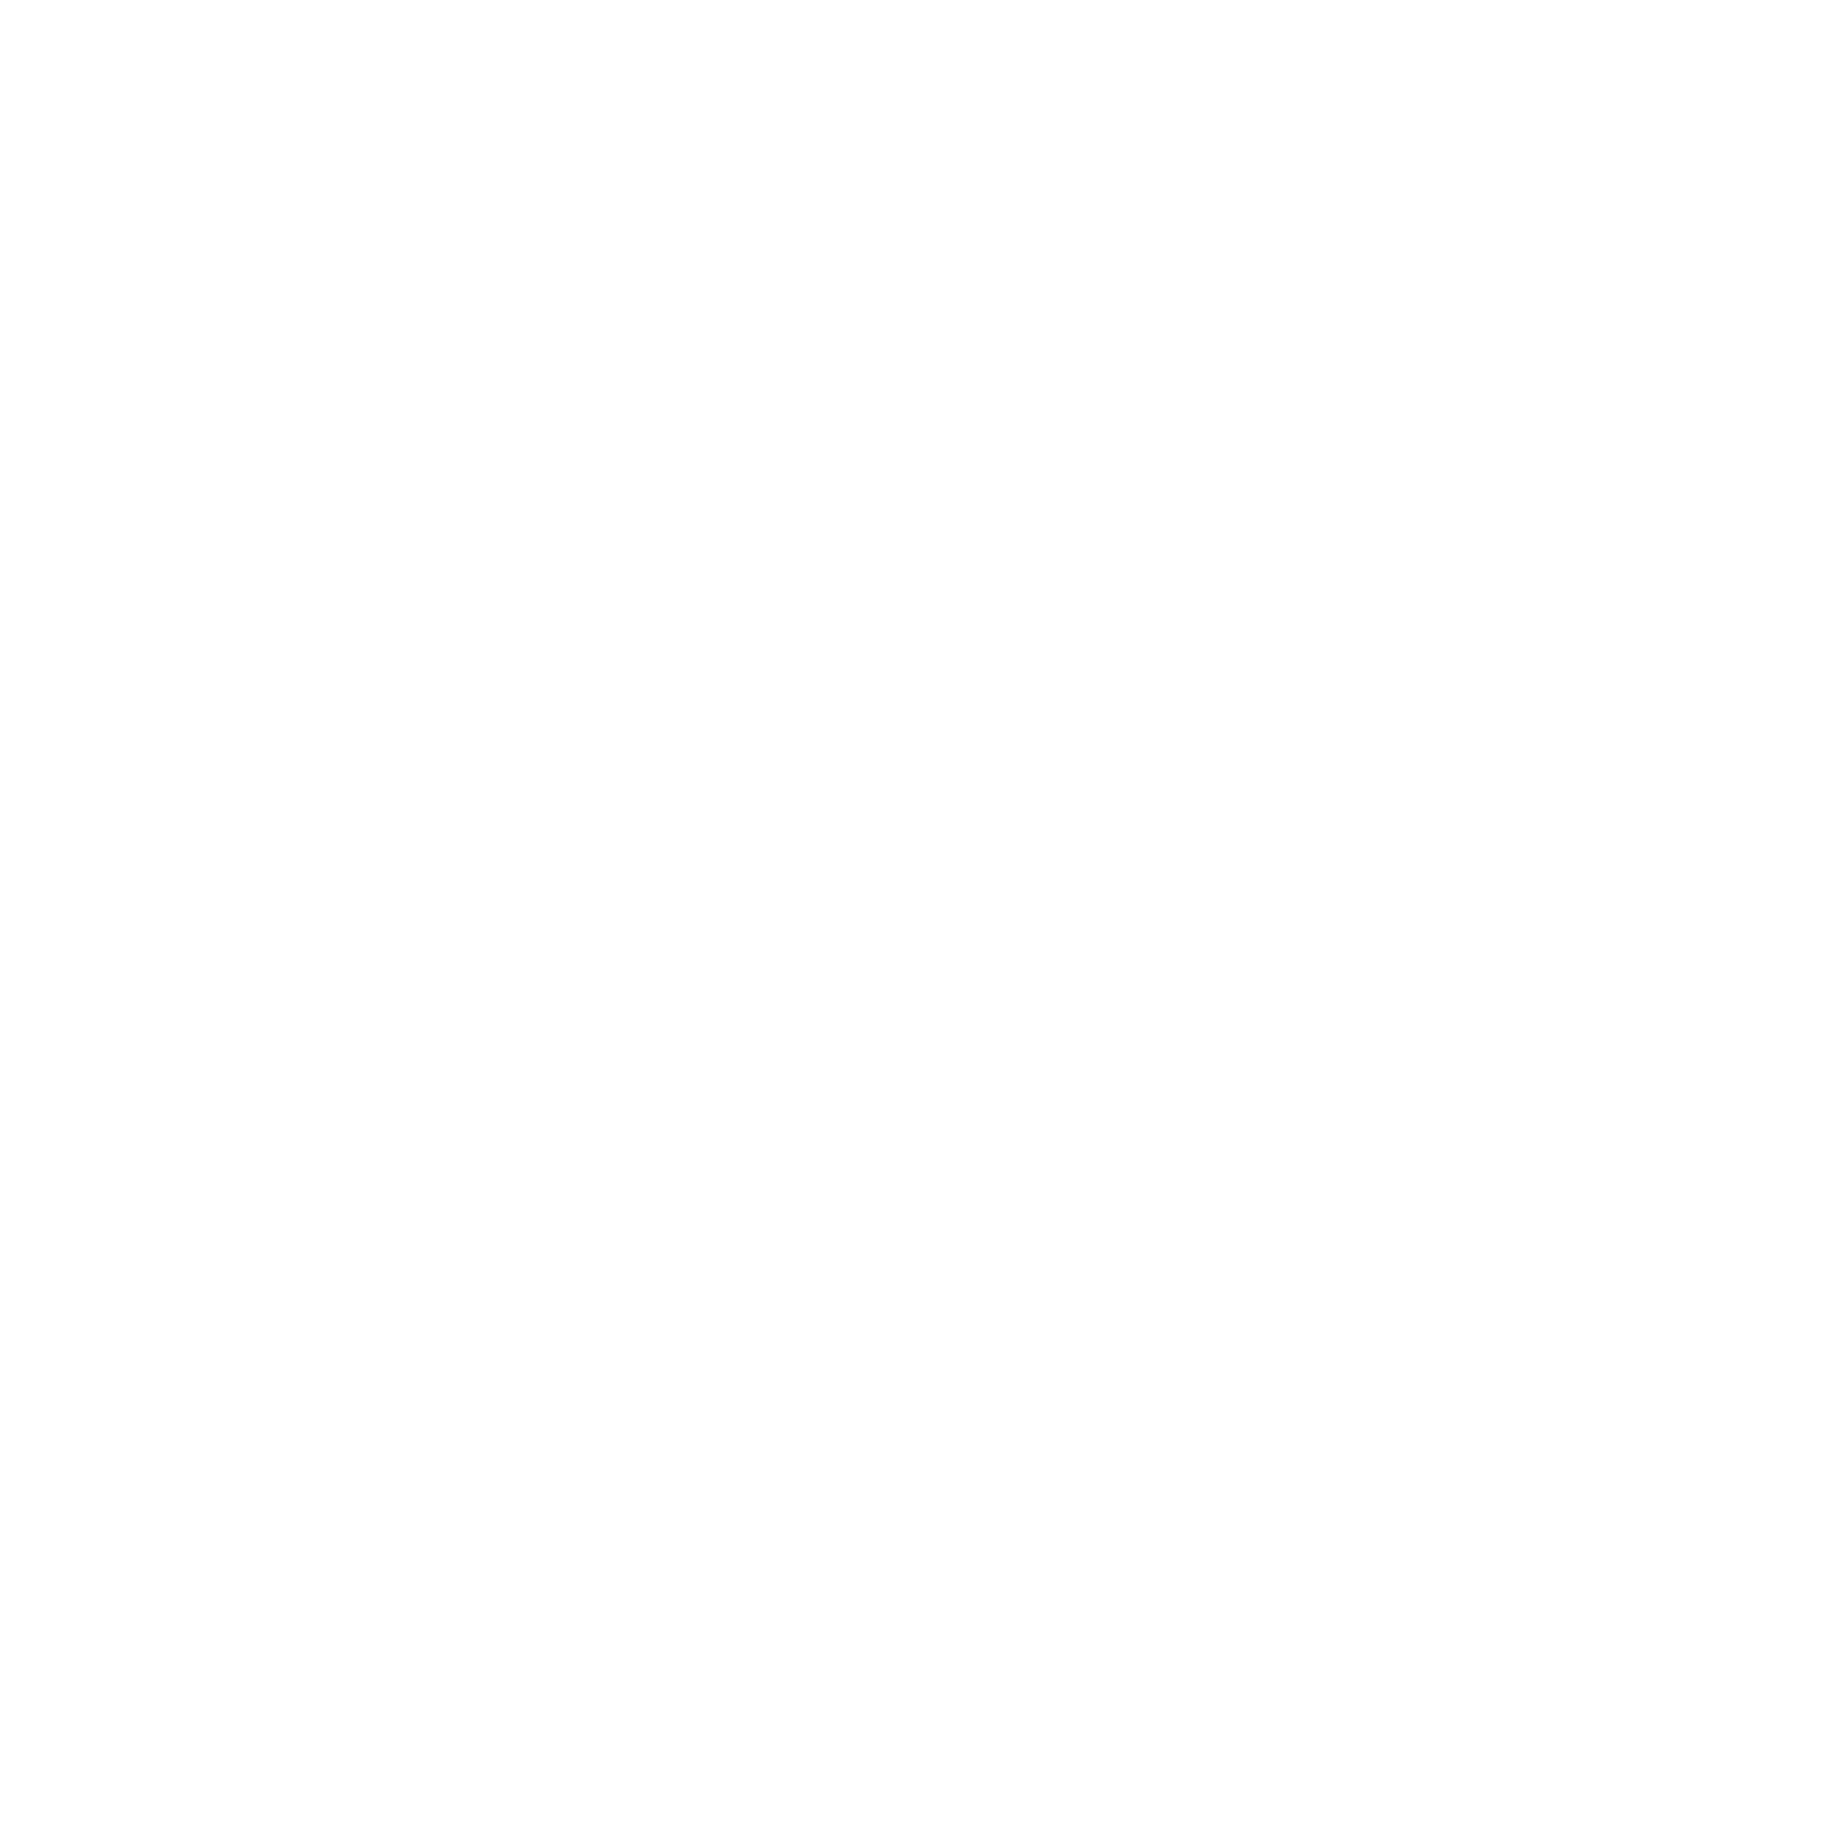 butterfly mark certification logo